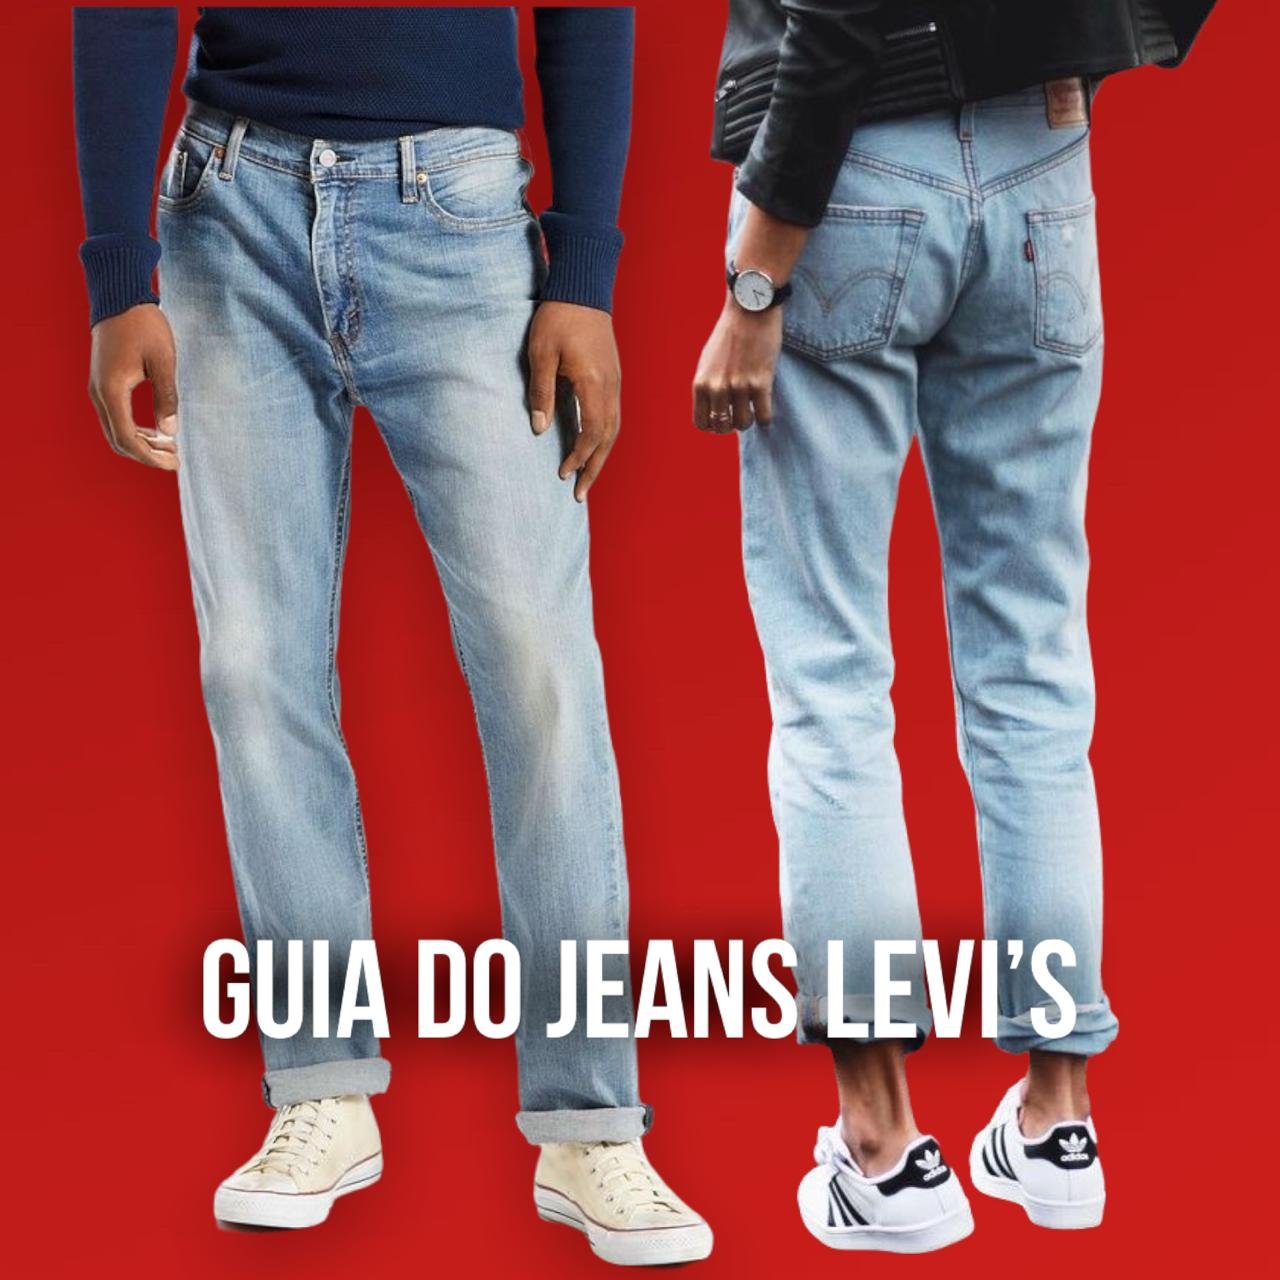 guia do jeans levi's